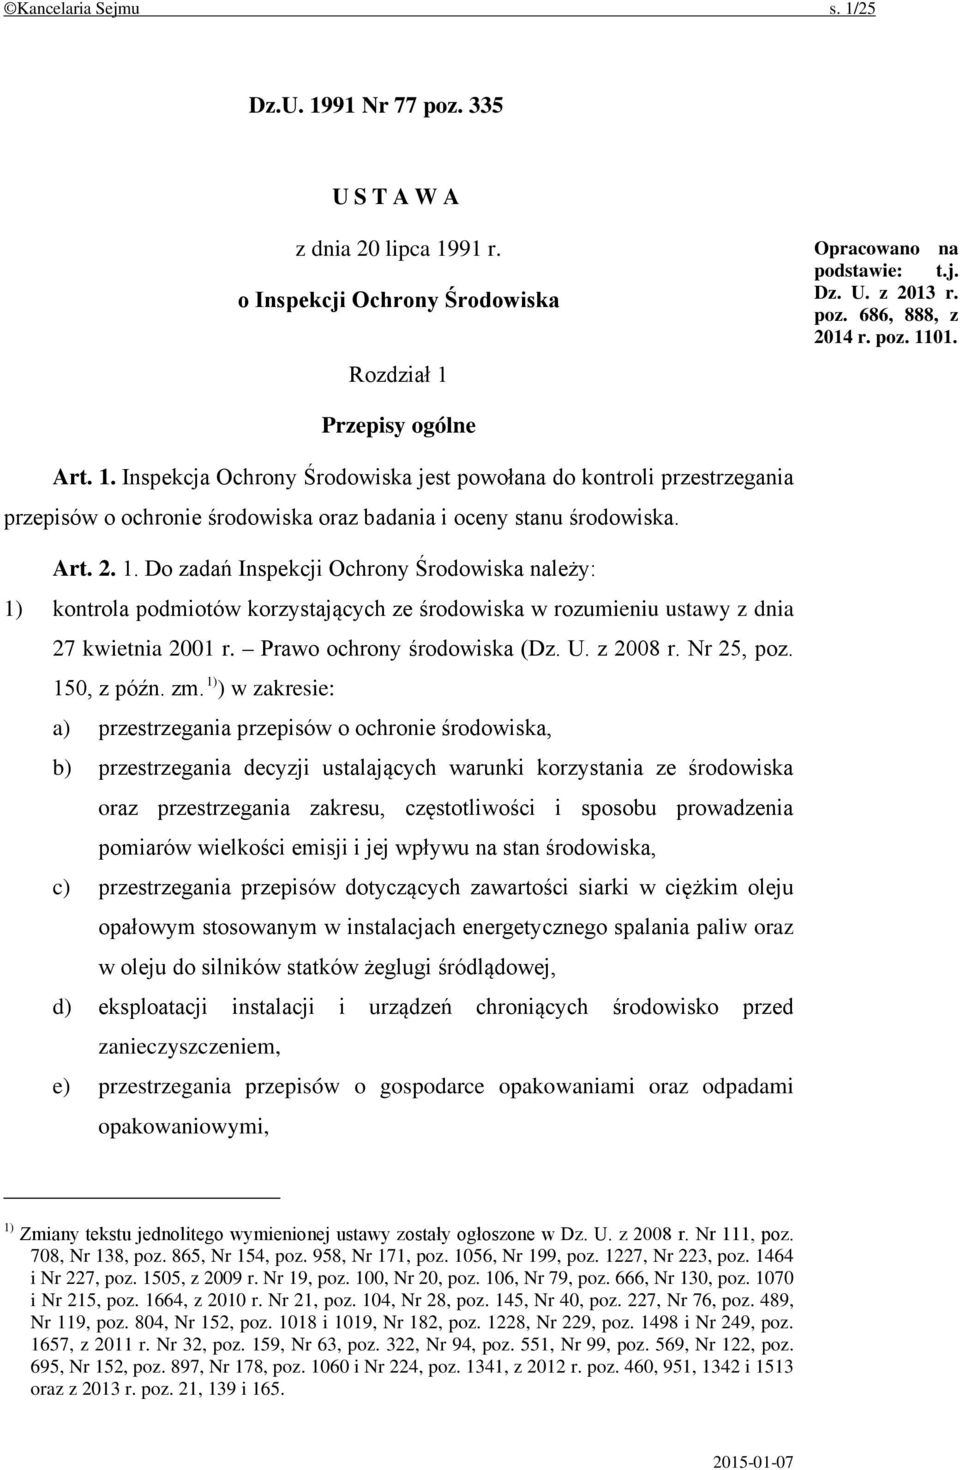 Prawo ochrony środowiska (Dz. U. z 2008 r. Nr 25, poz. 150, z późn. zm.